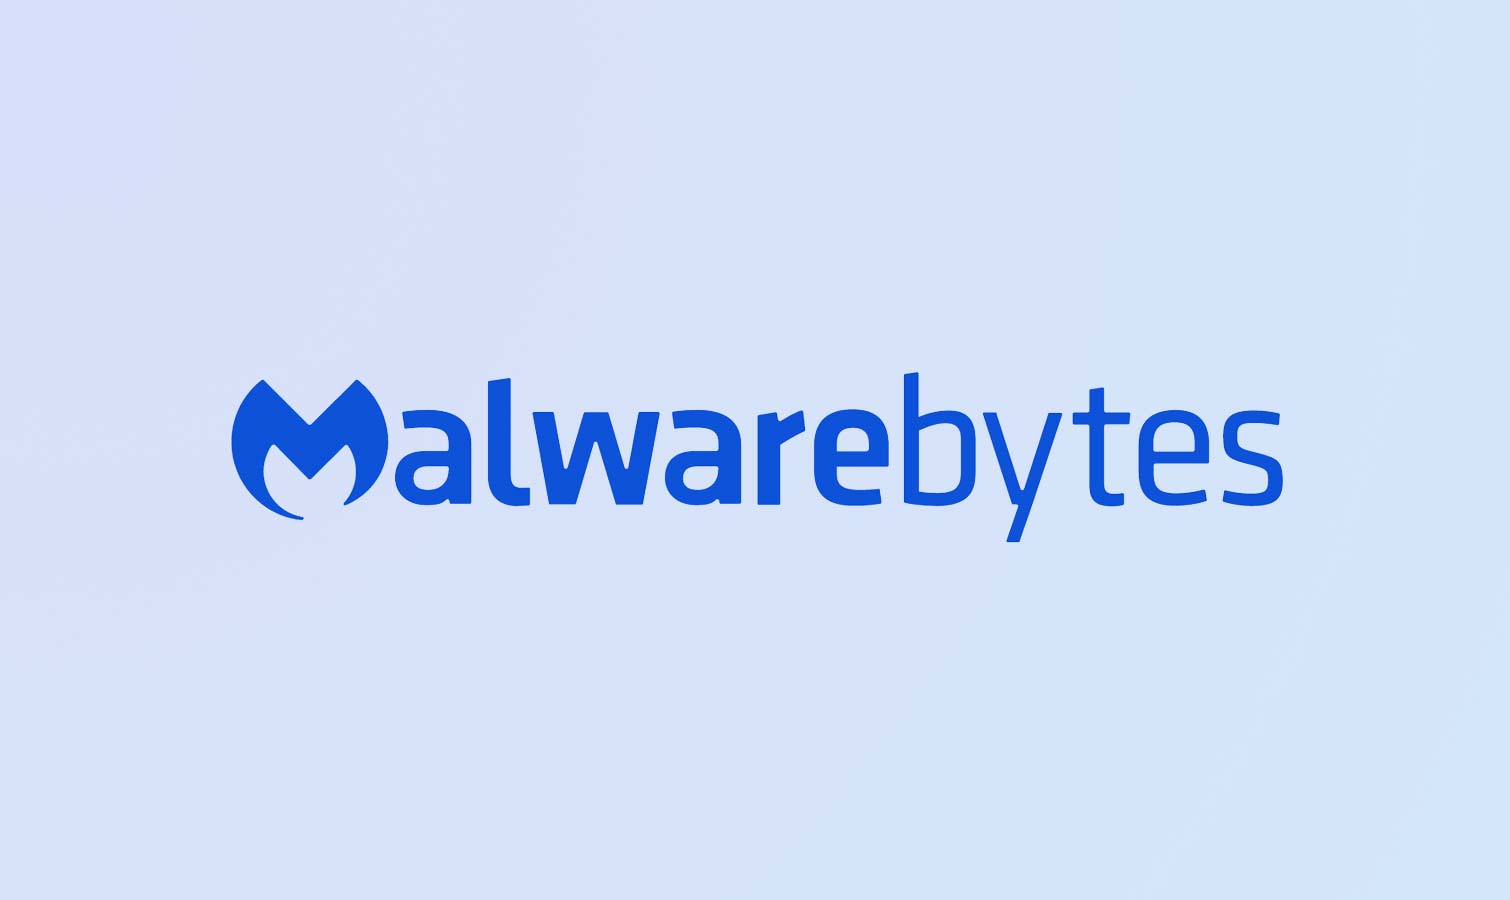 malwarebytes free download